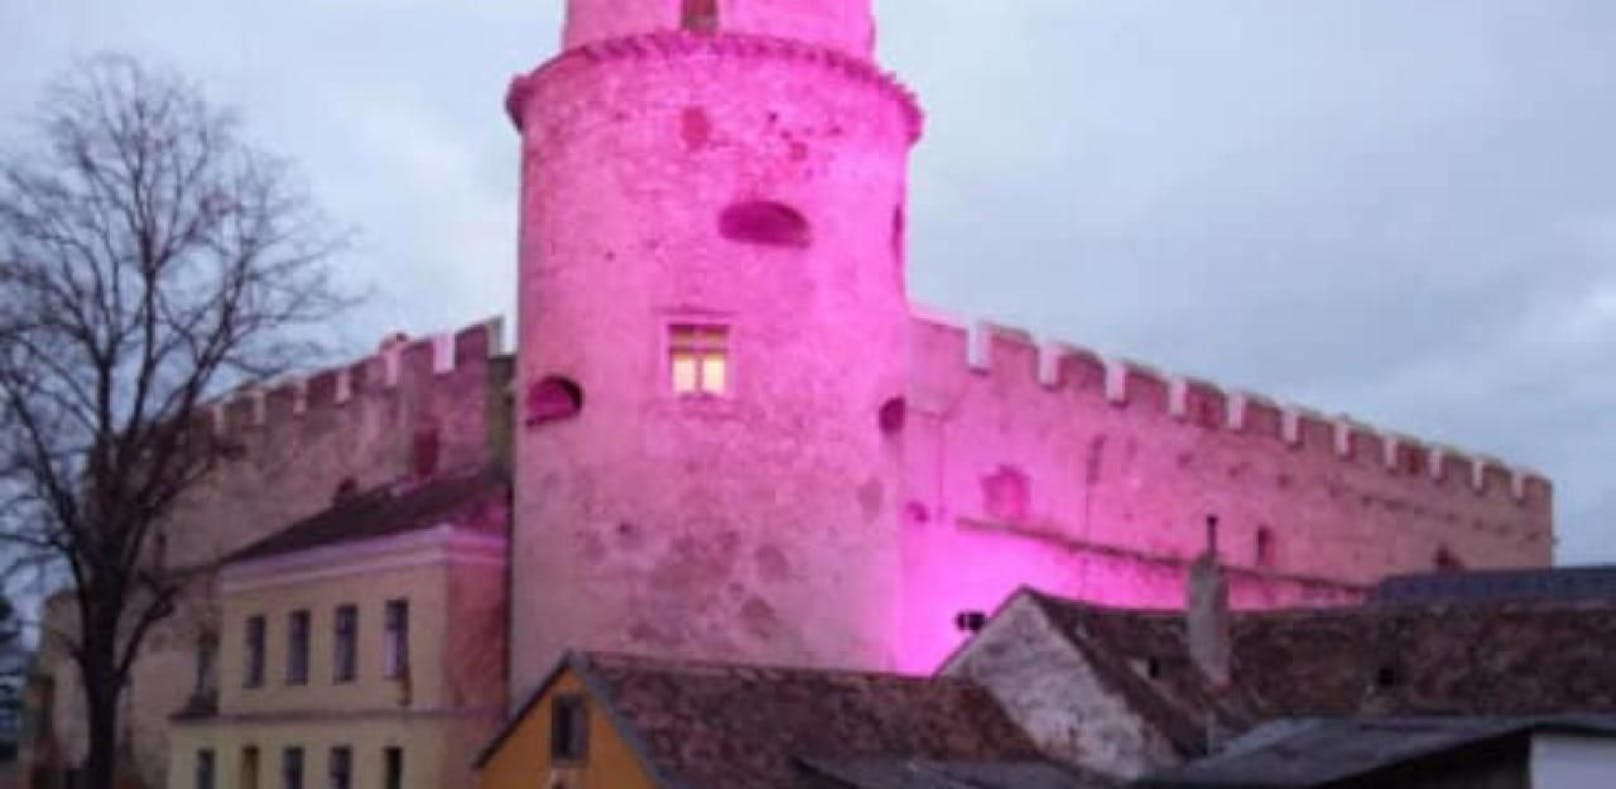 Wahrzeichen und touristische Attraktion: Für ein paar Anrainer leuchtet die Laaer Burg aber zu grell, vor allem nach 22 Uhr.